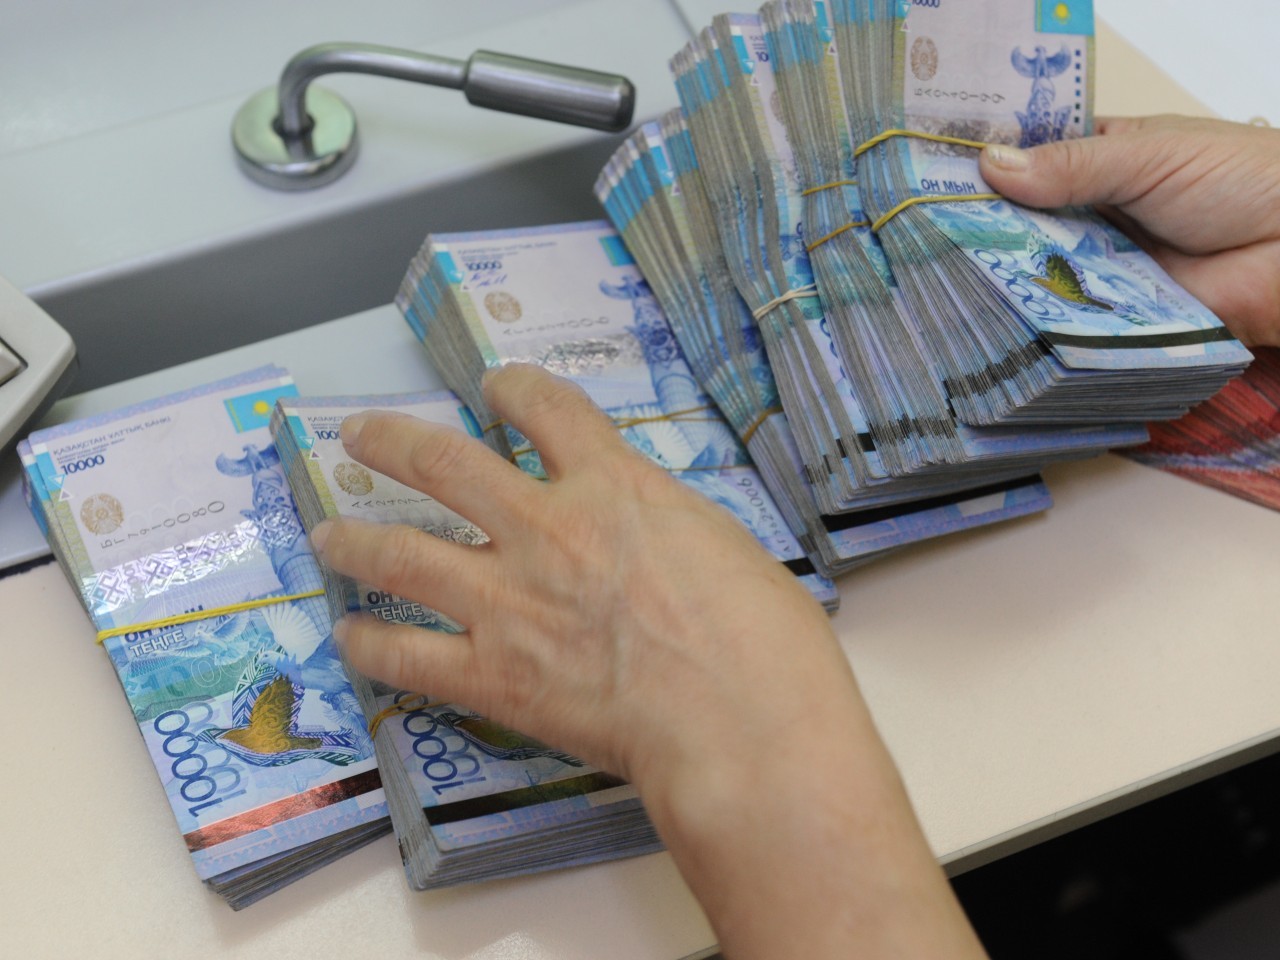 23 млрд тенге – сумма полугодовой налоговой задолженности казахстанцев государству